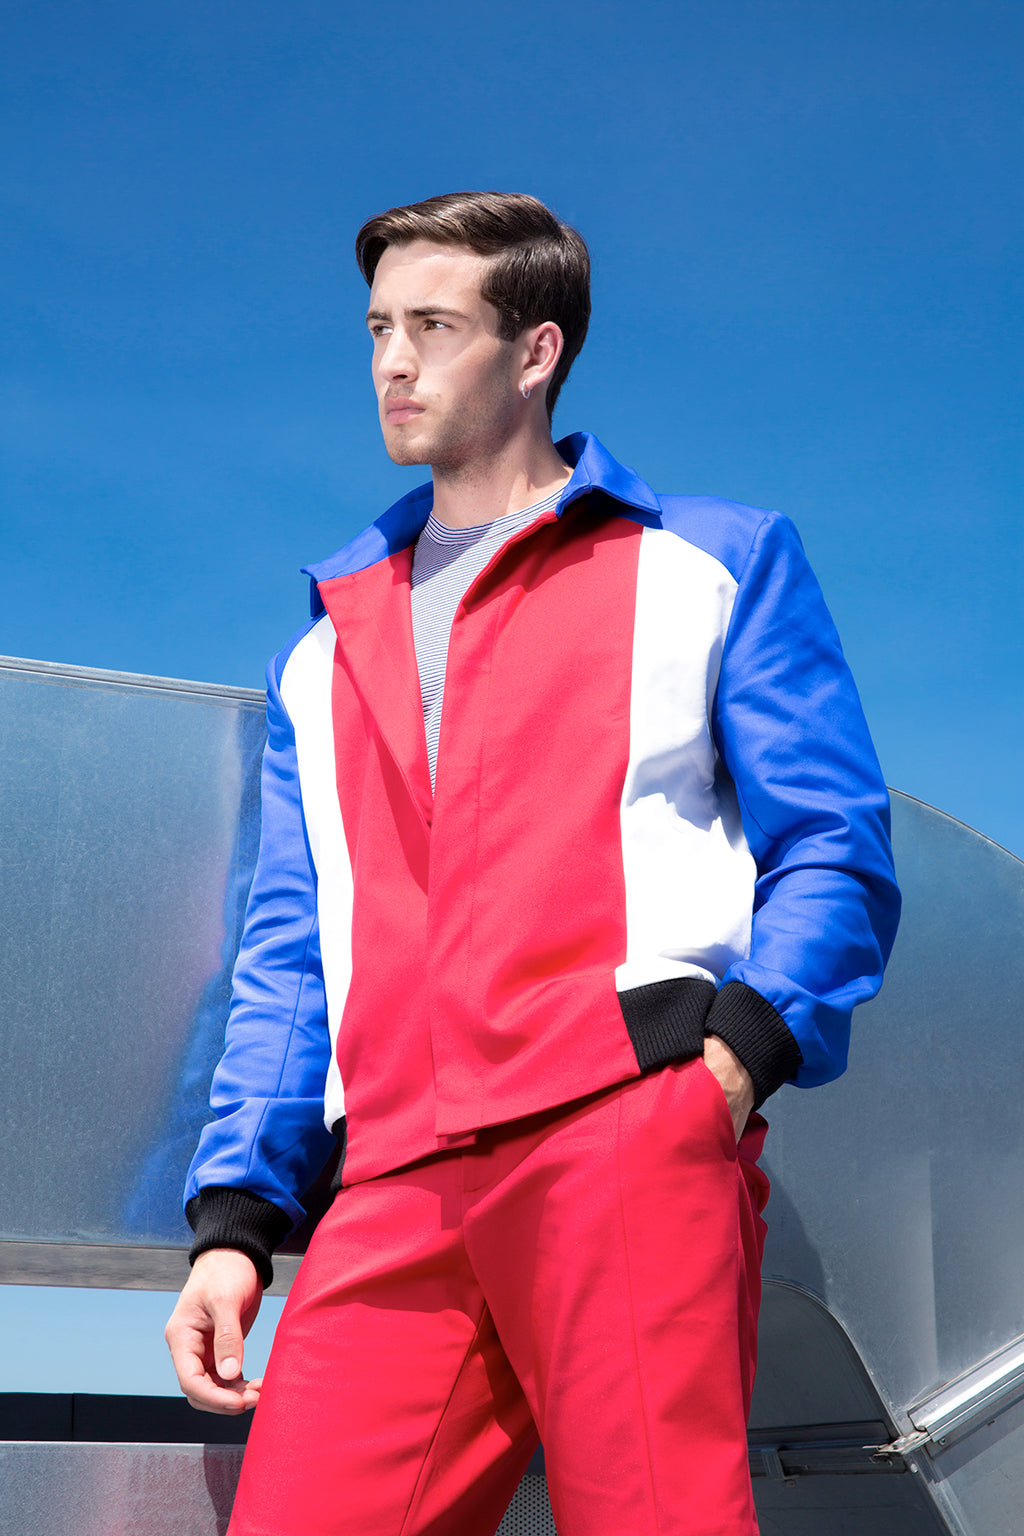 Sébastien Blondin blouson jacket été summer coton cotton tricolore tricolour créateur designer nouveau new basique basic mode fashion homme man men men's world